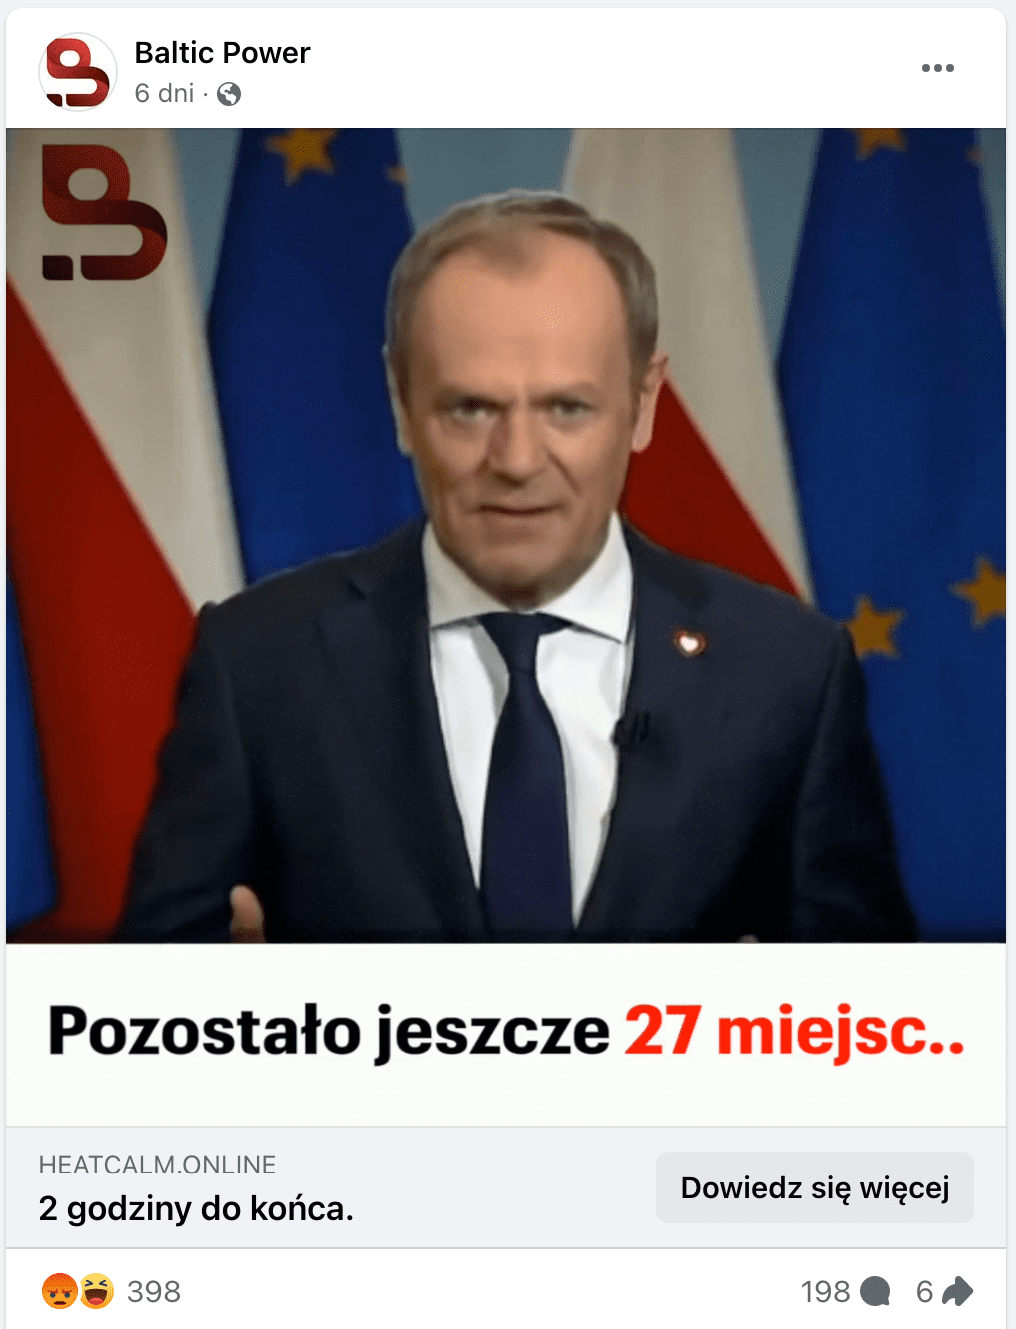 Zrzut ekranu posta na Facebooku. W każde znajduje się Donald Tusk w garniturze, białej koszuli i granatowym krawacie. W tle wiszą flagi Polski i Unii Europejskiej.